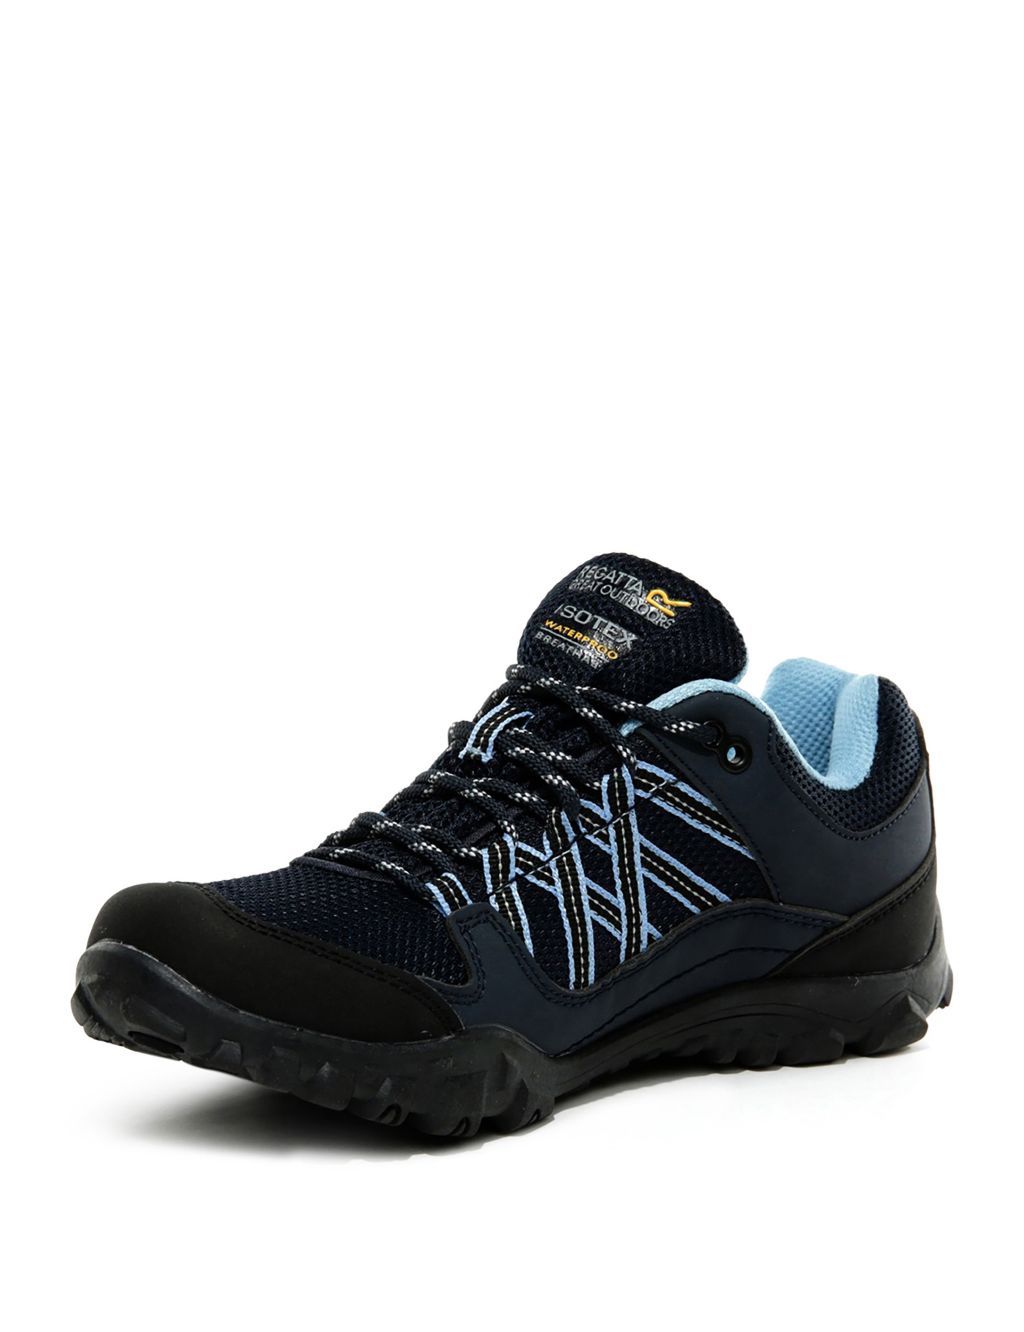 Buy Lady Edgepoint III Waterproof Walking Shoes | Regatta | M&S